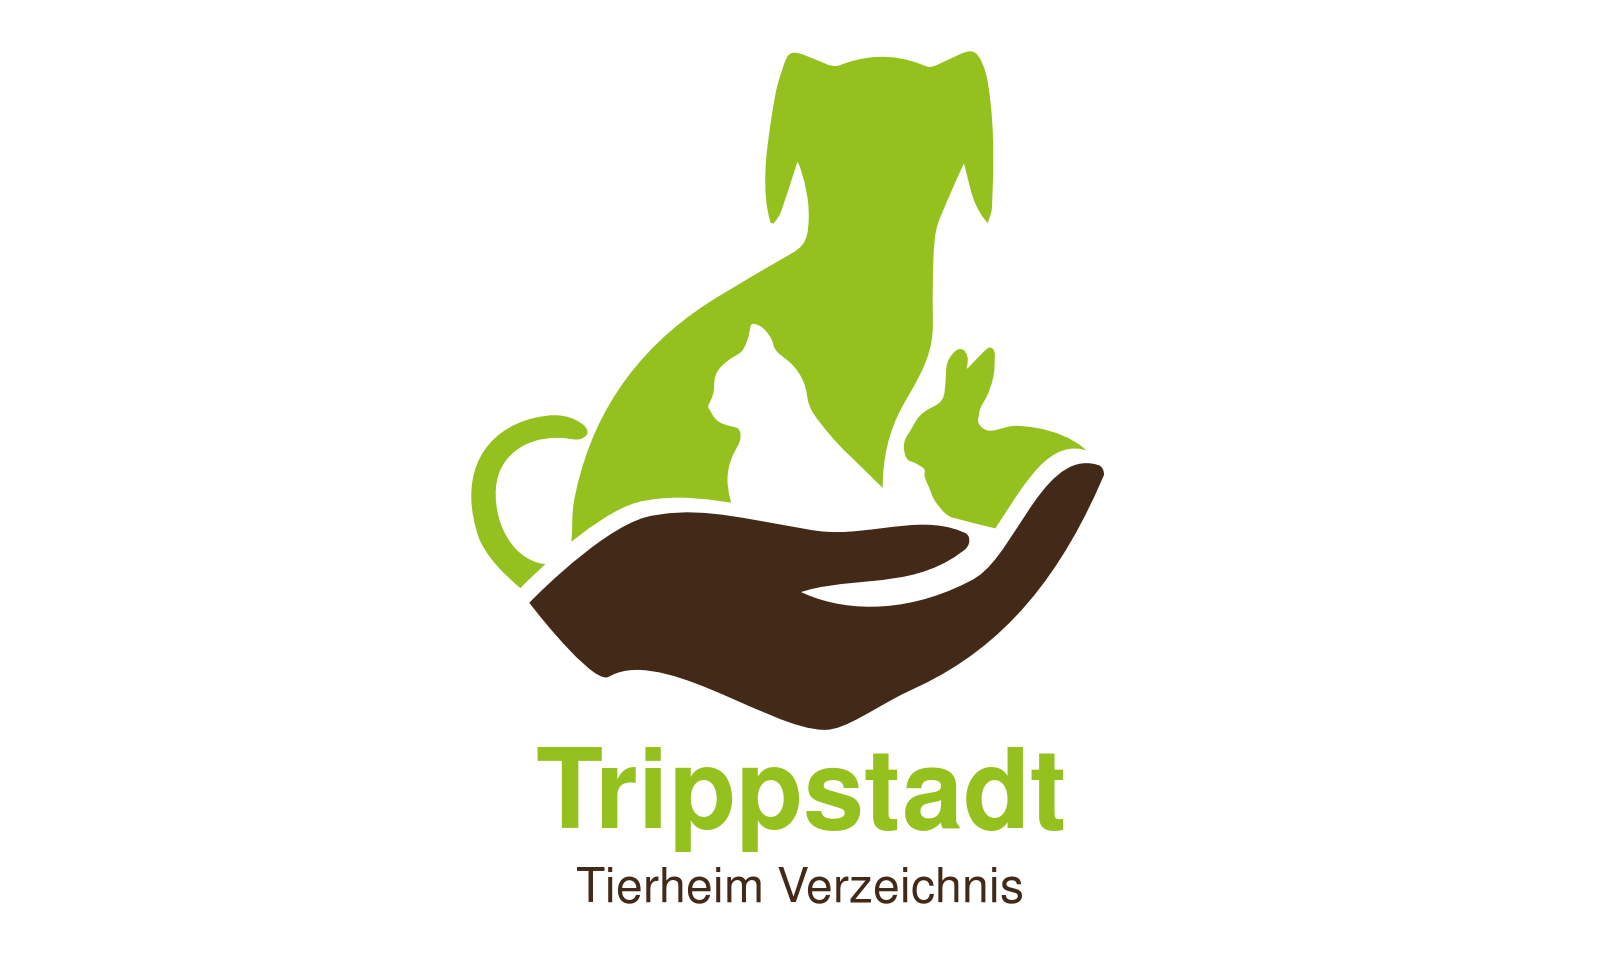 Tierheim Trippstadt